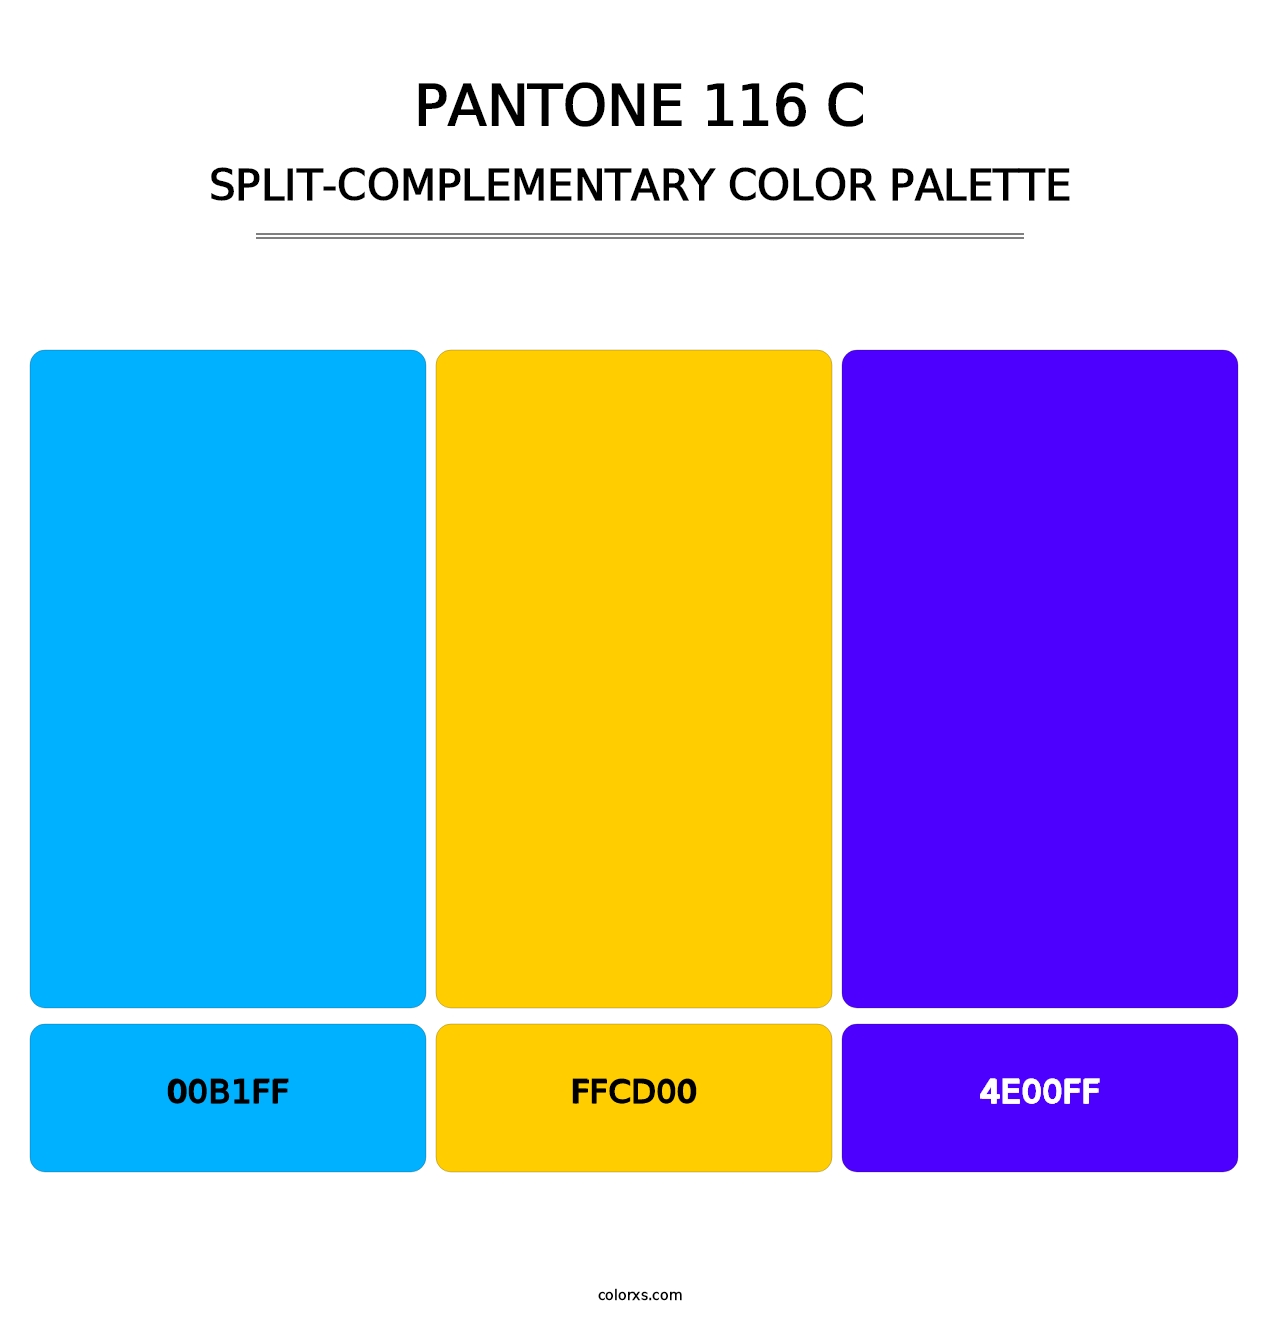 PANTONE 116 C - Split-Complementary Color Palette